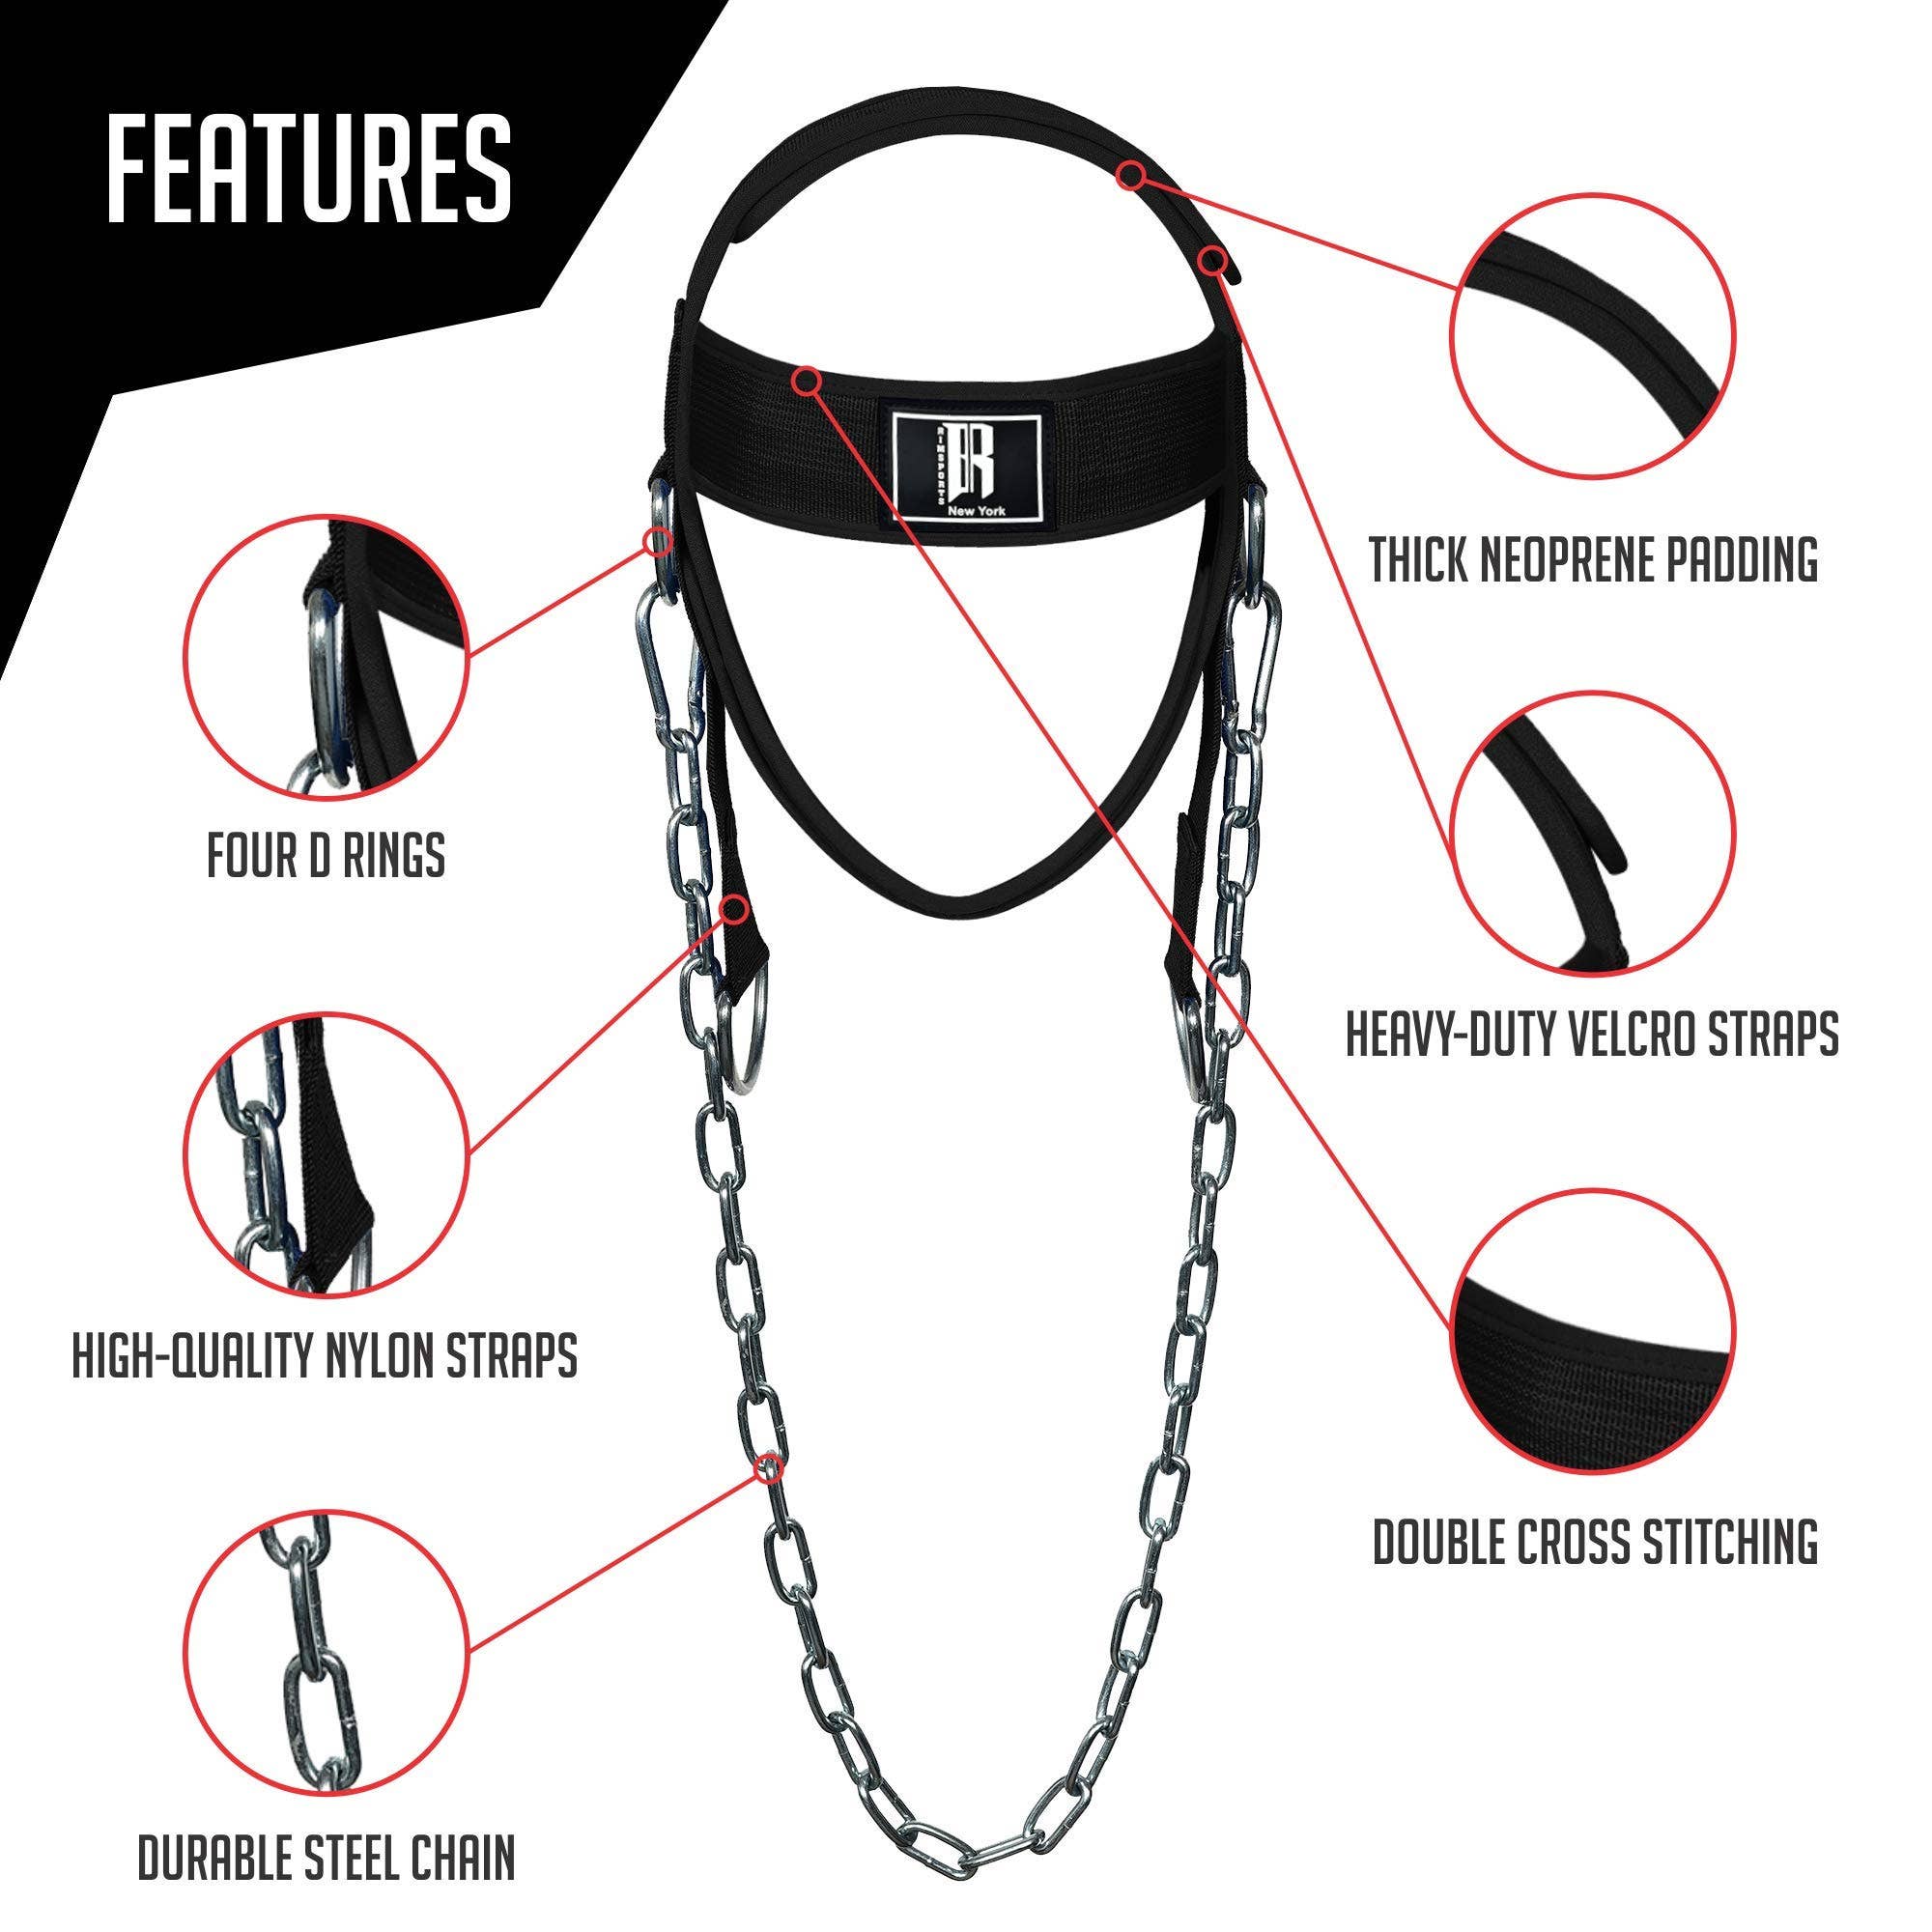 The Original Neck Flex® Head Harness Kit – Getphysical.com